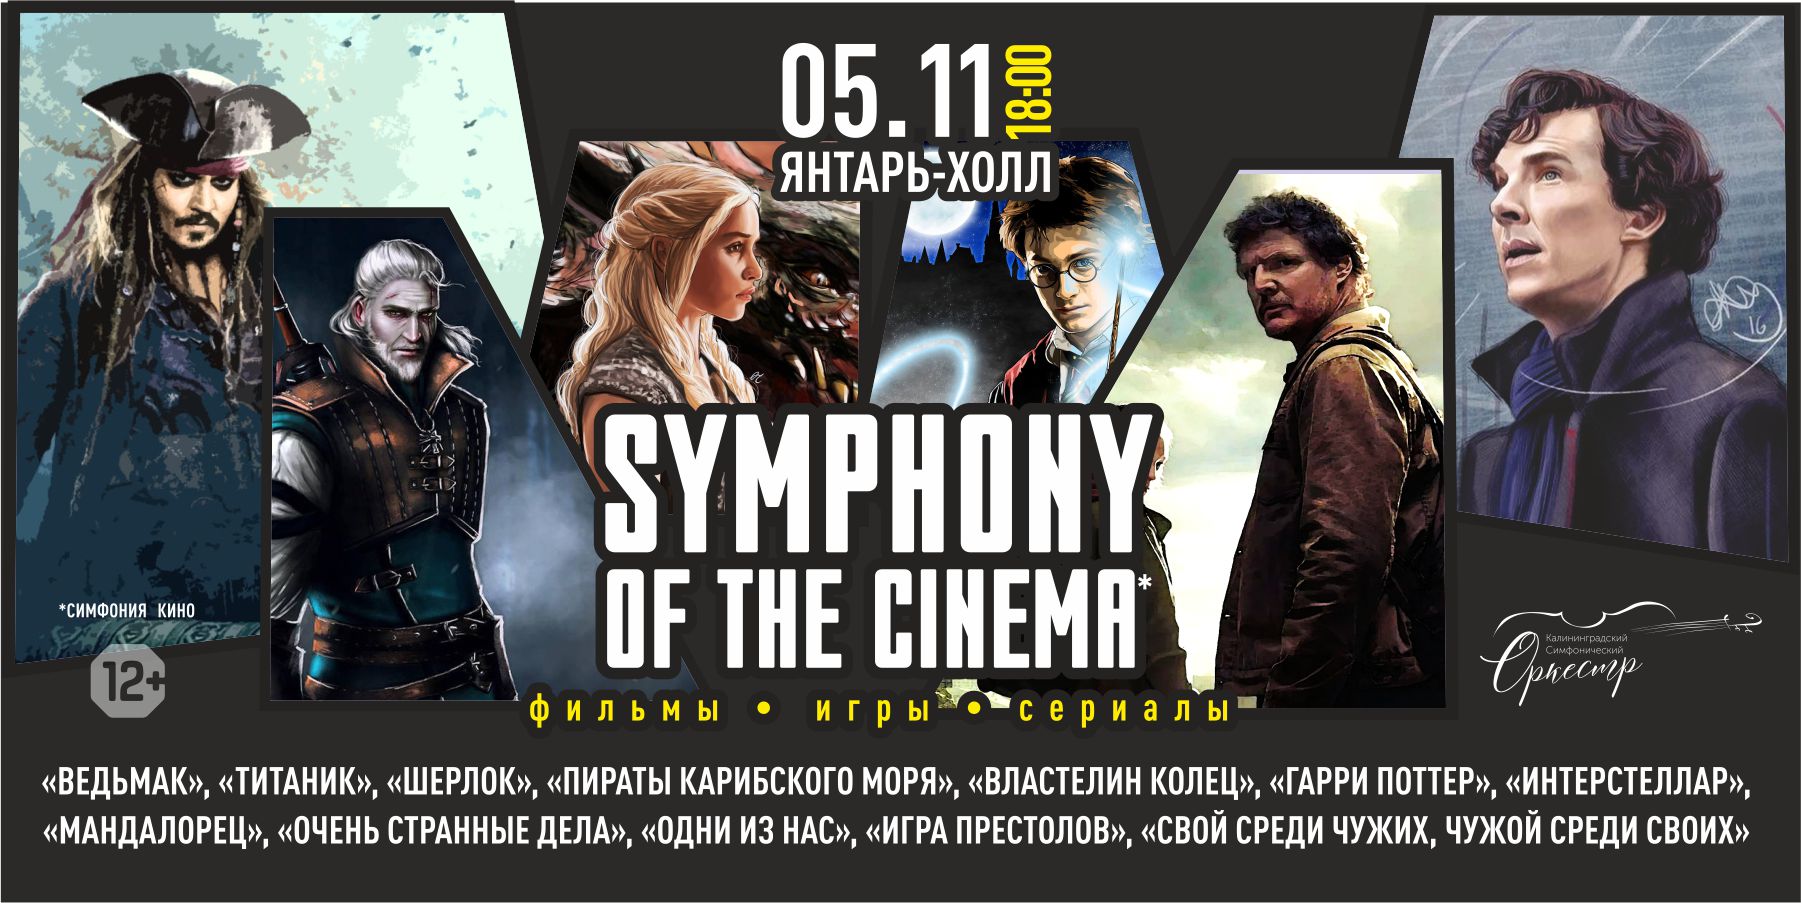 Symphony of the Cinema. Фильмы. Игры. Сериалы